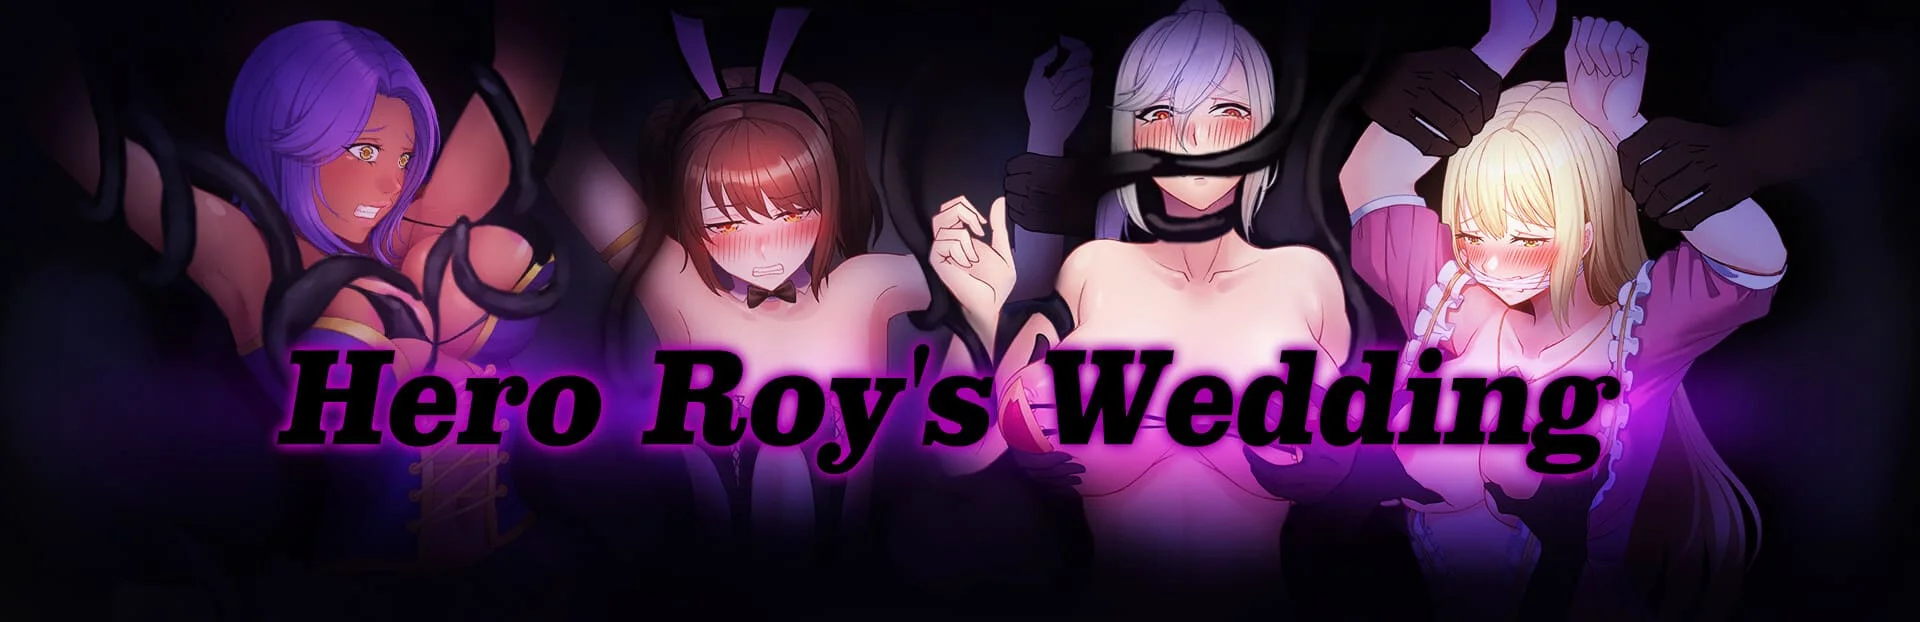 Download SwordRP5 - Hero Roy's Wedding